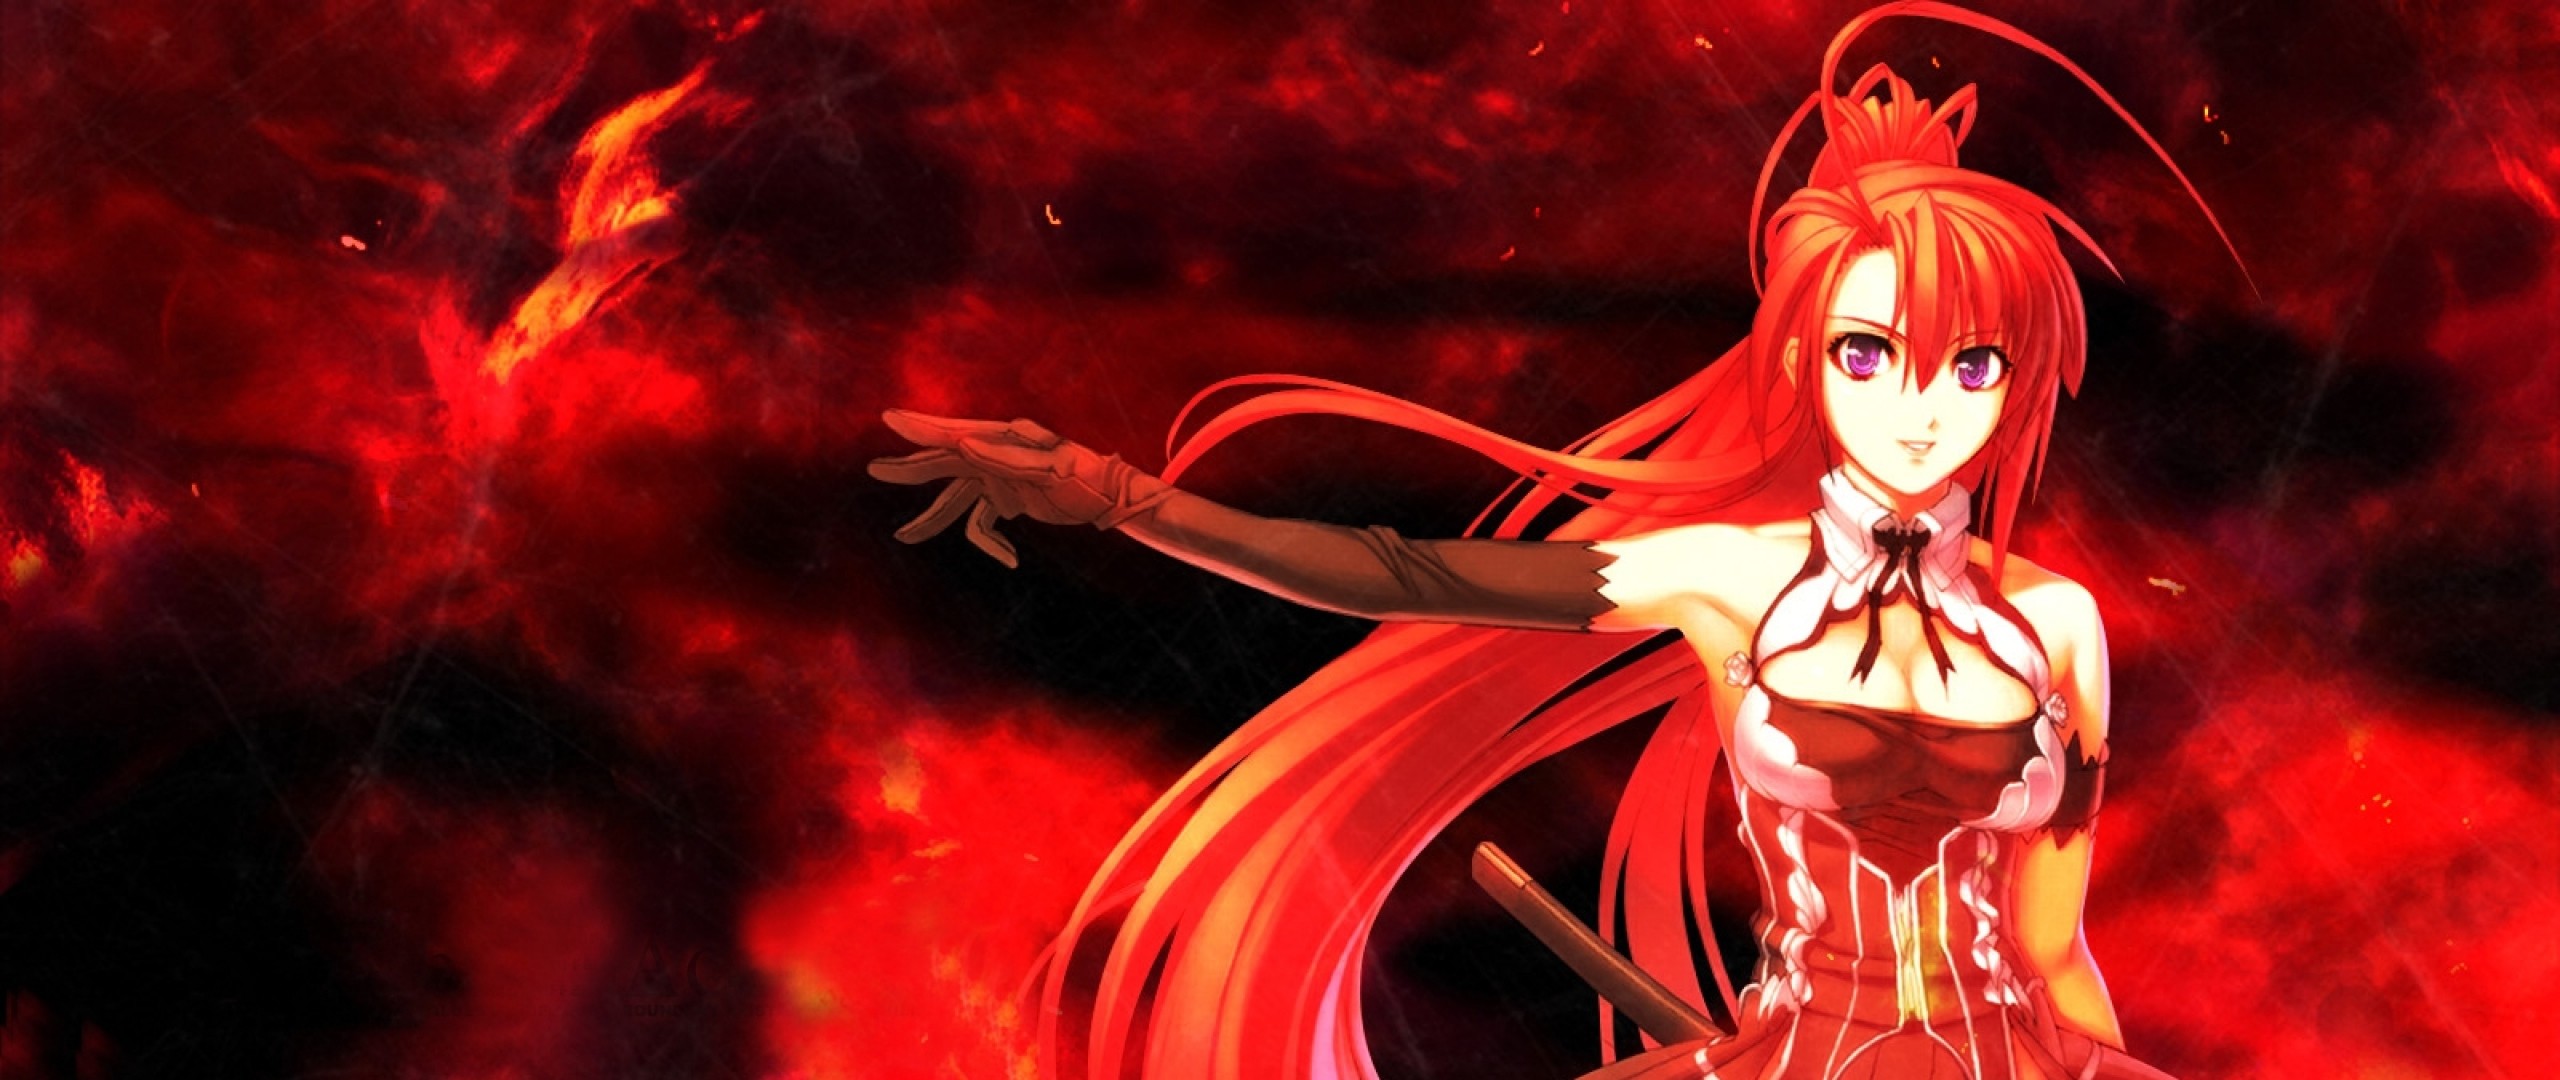 Wallpaper anime, girl, red, hair, sword, background